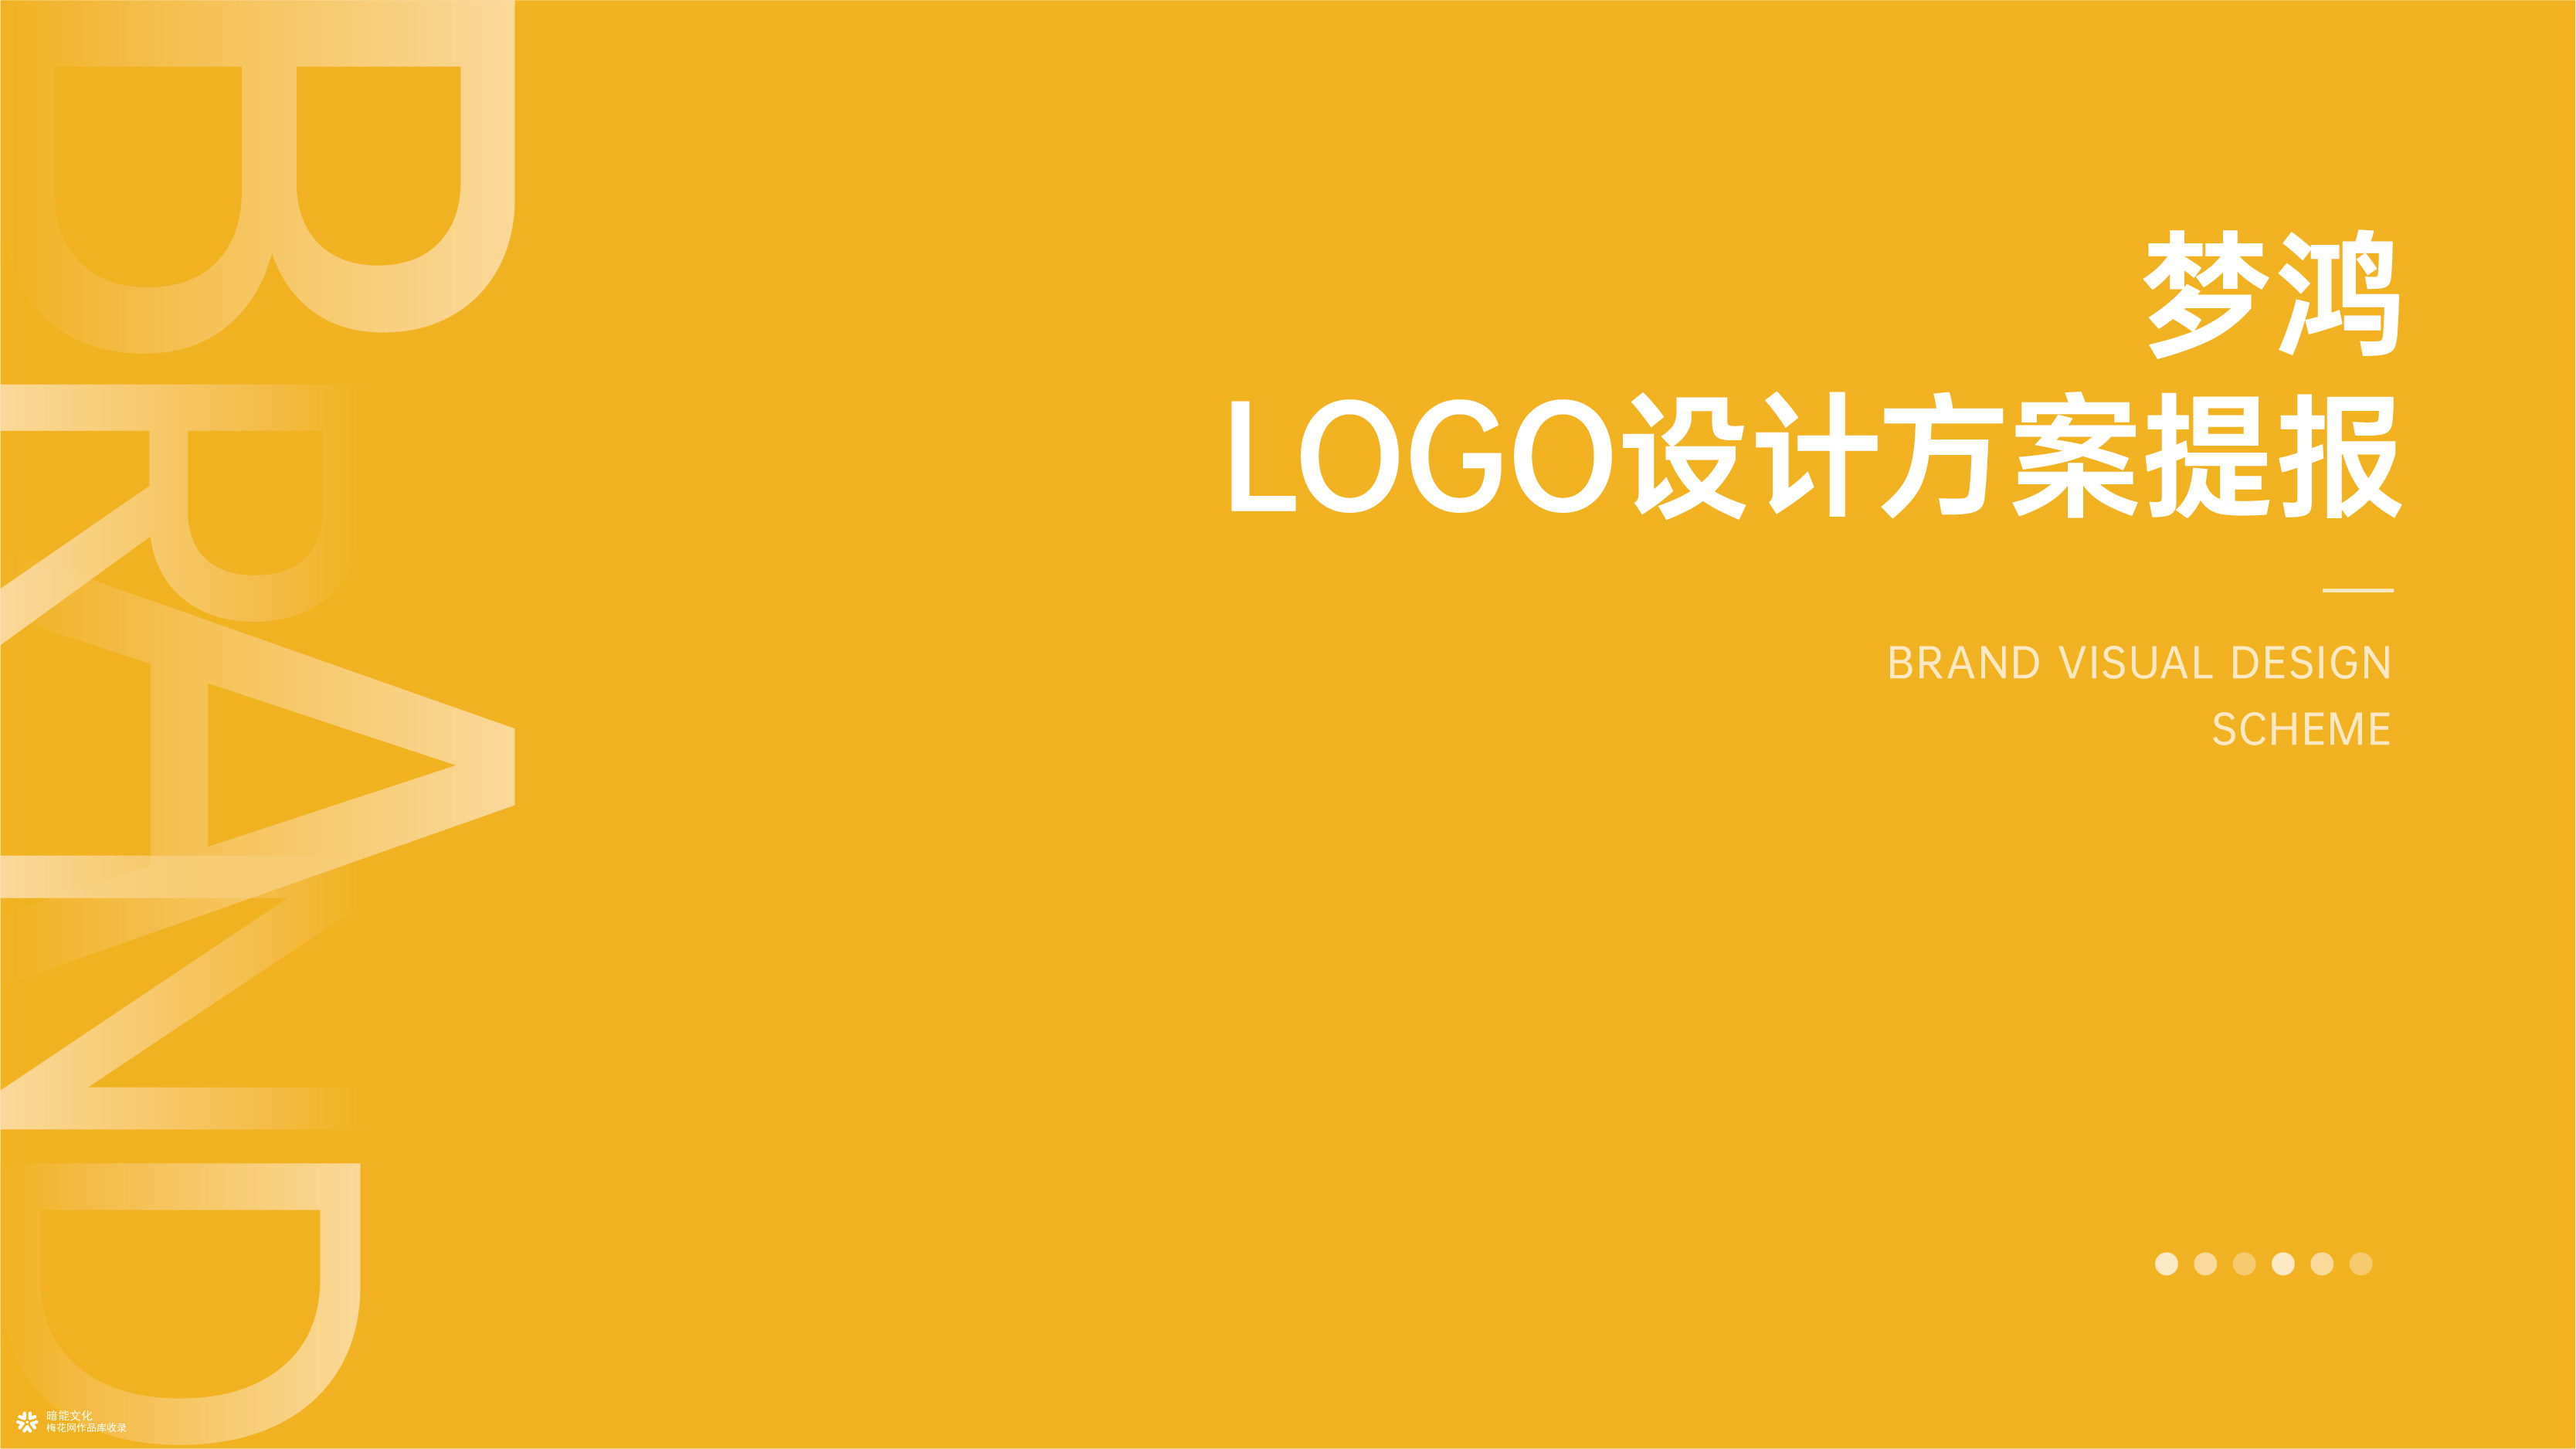 重庆暗能广告文化-梦鸿企业logo商标标志设计